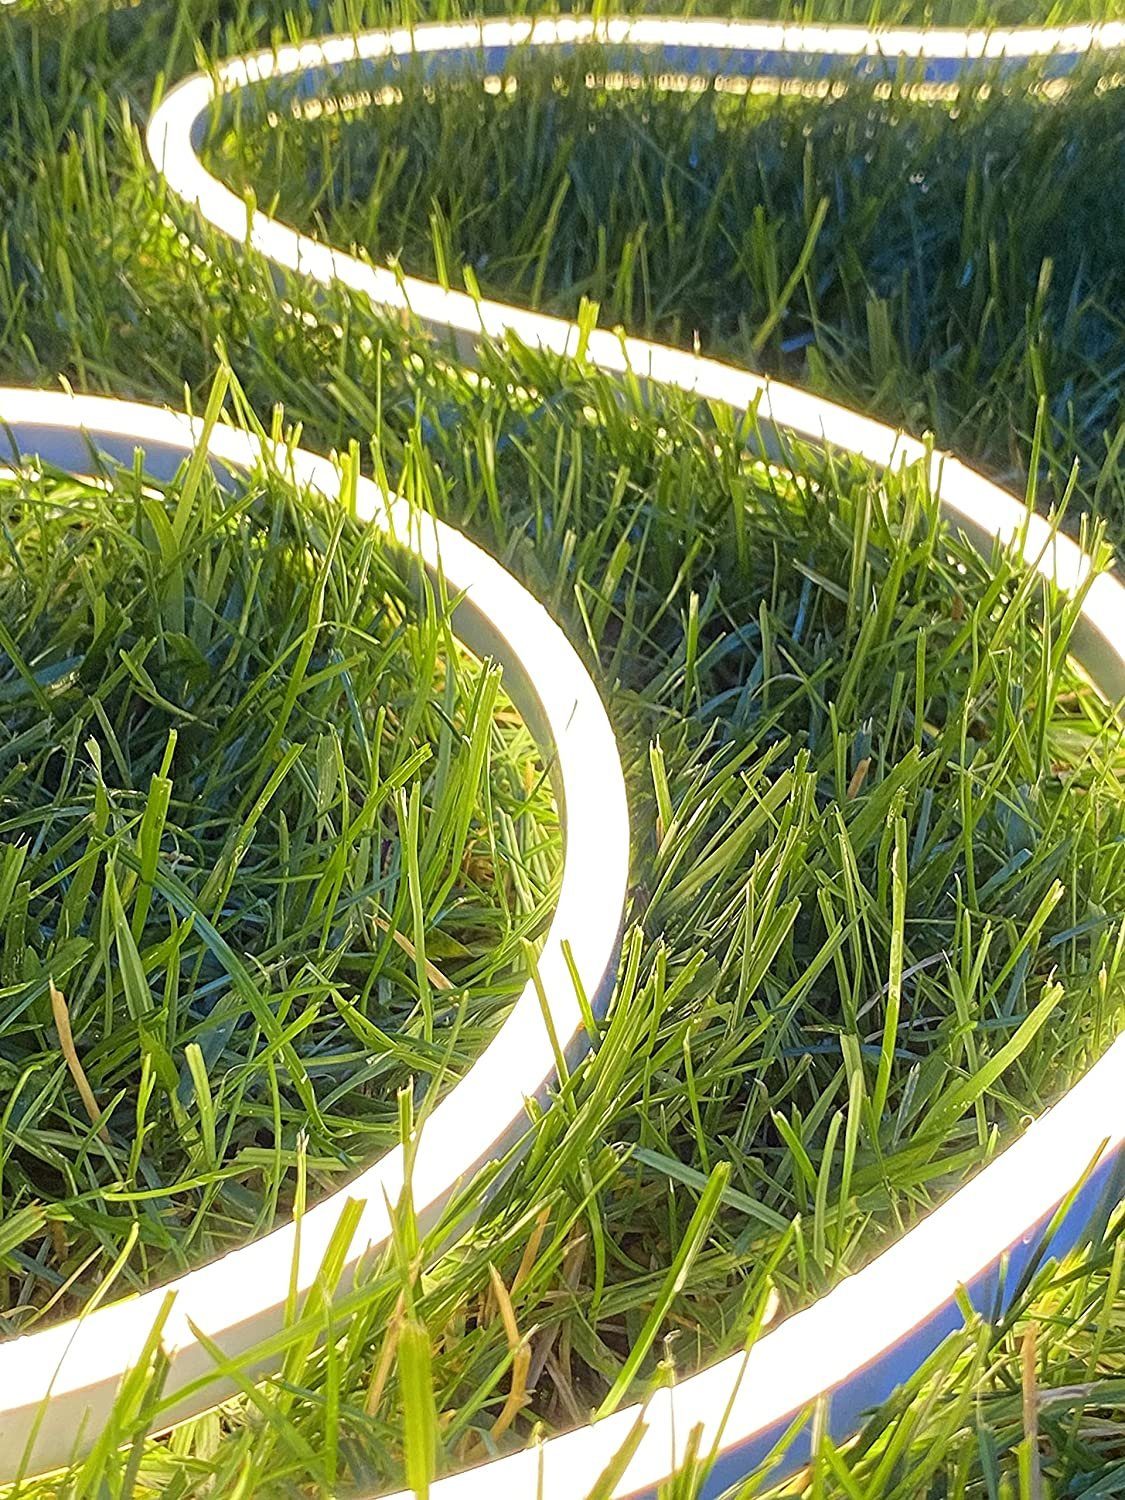 Ogeled LED Lichtleiste Neon Strip Wasserfest 230V Dimmbar Kaltweiß Warmweiss Warmweiß